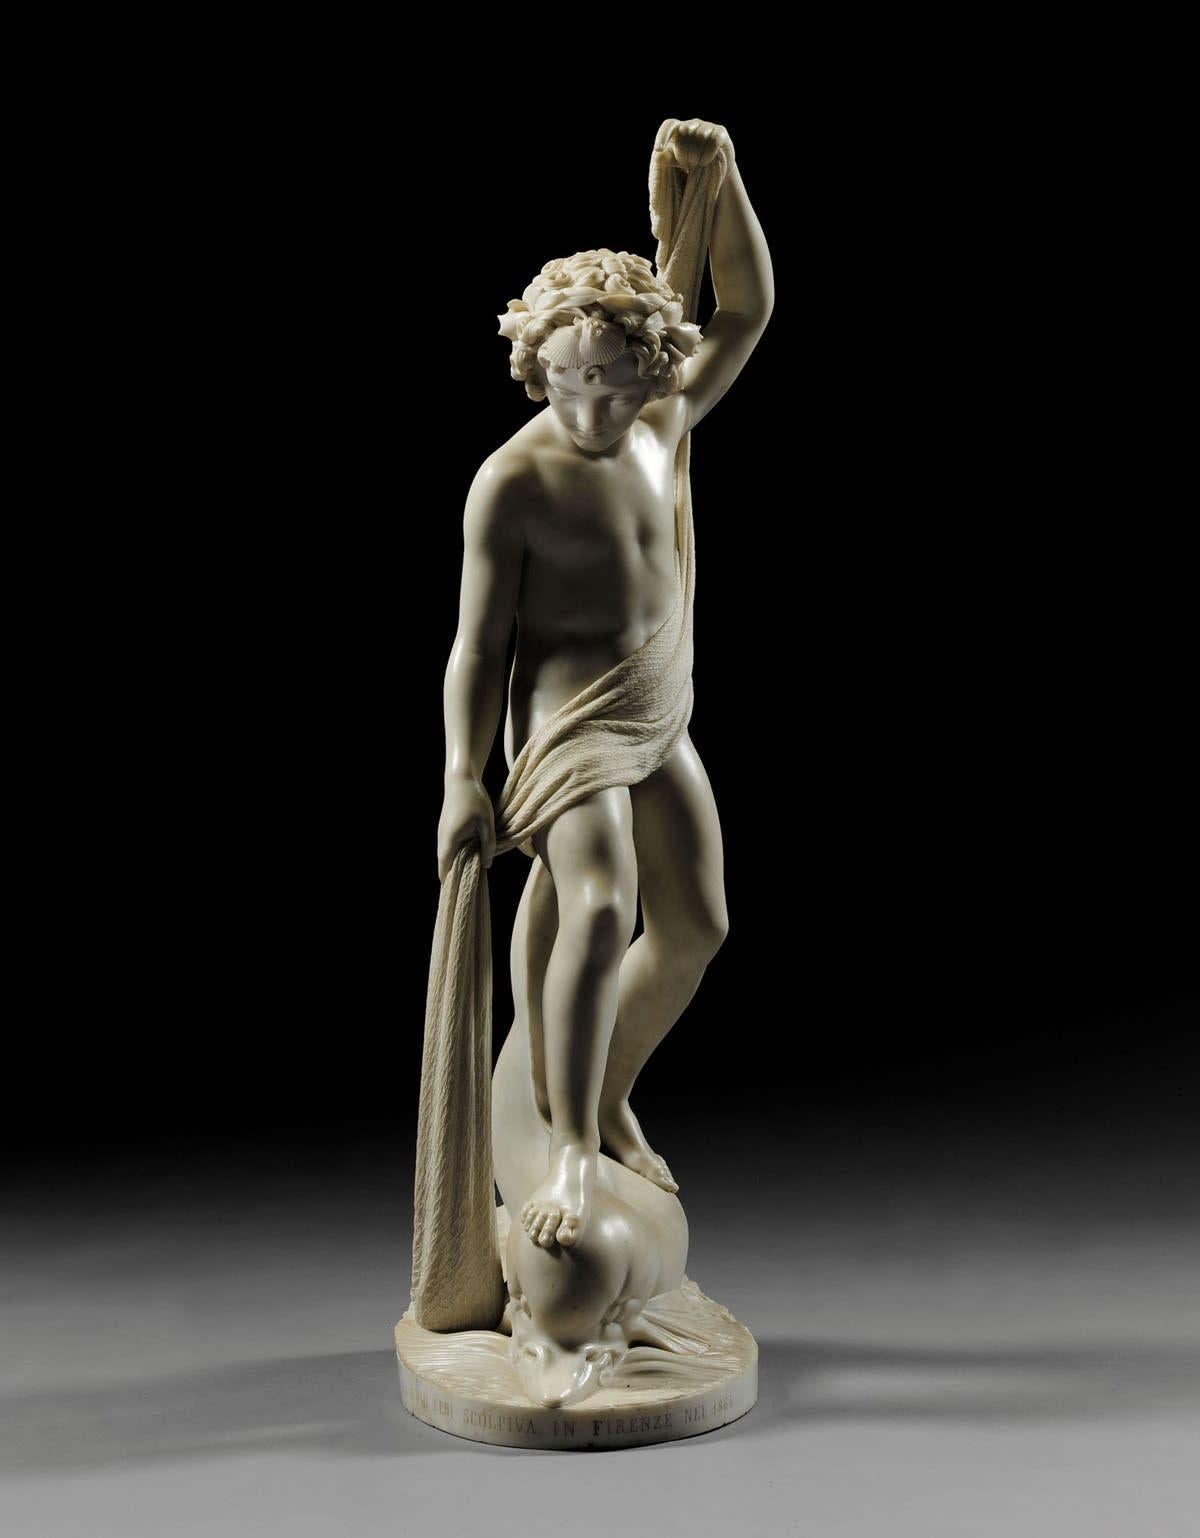 Die Statue des Supreme Fisher Boy aus Carrara-Marmor – Sculpture von Pio Fedi